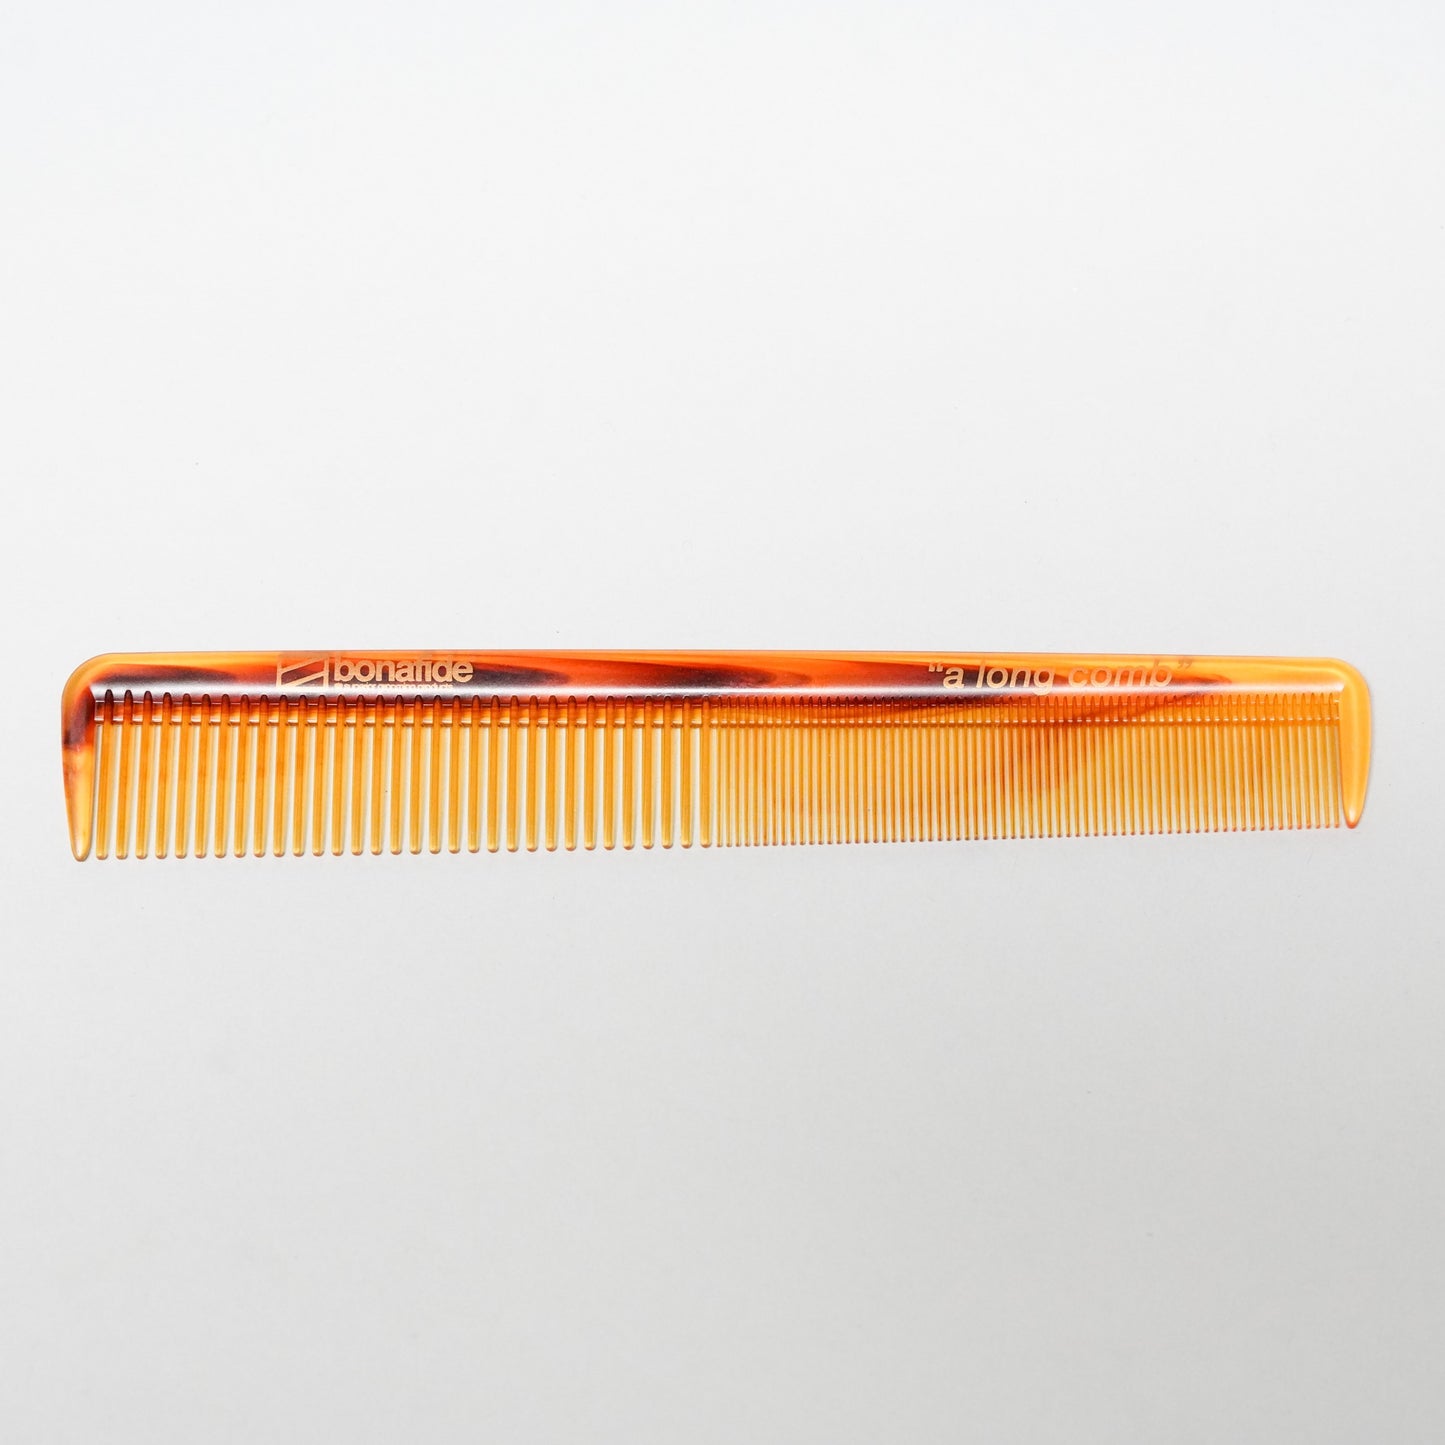 A Long Comb